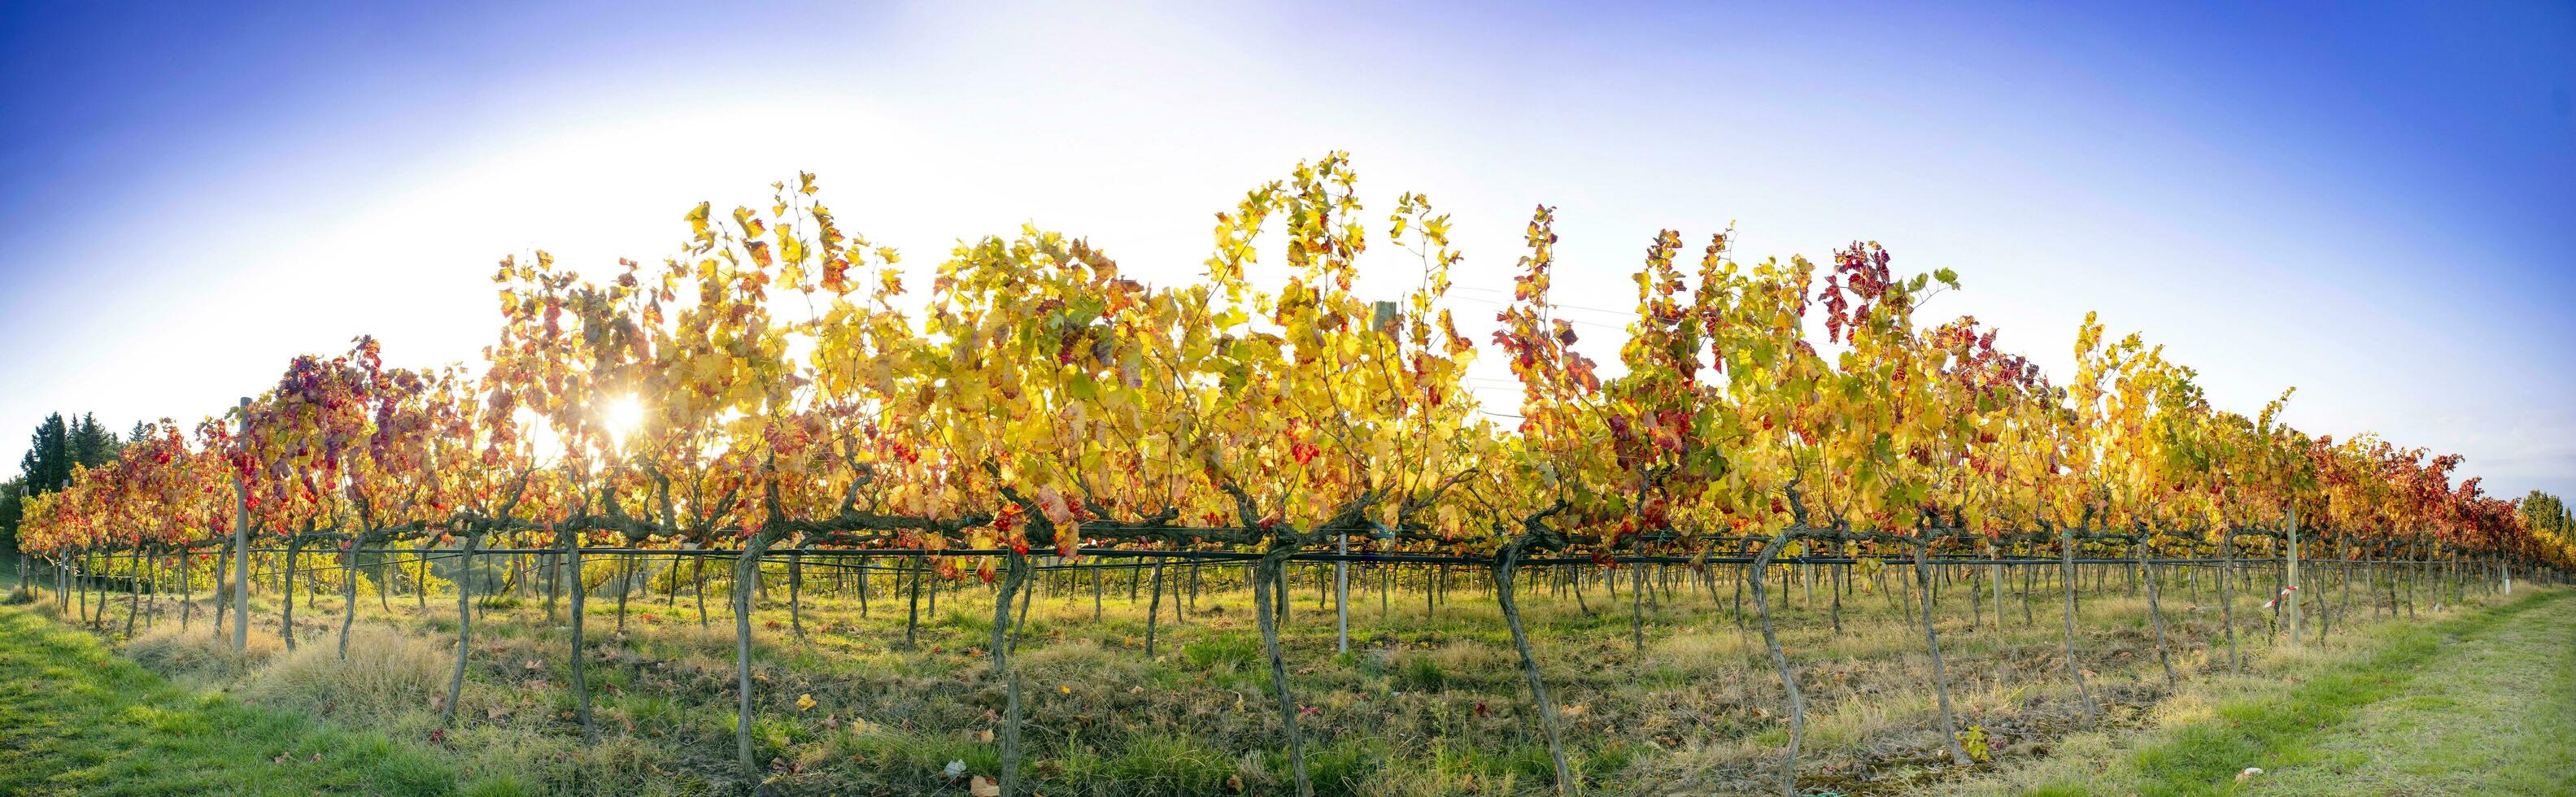 Overzicht van de kleuren van een Toscaans wijngaard in herfst foto